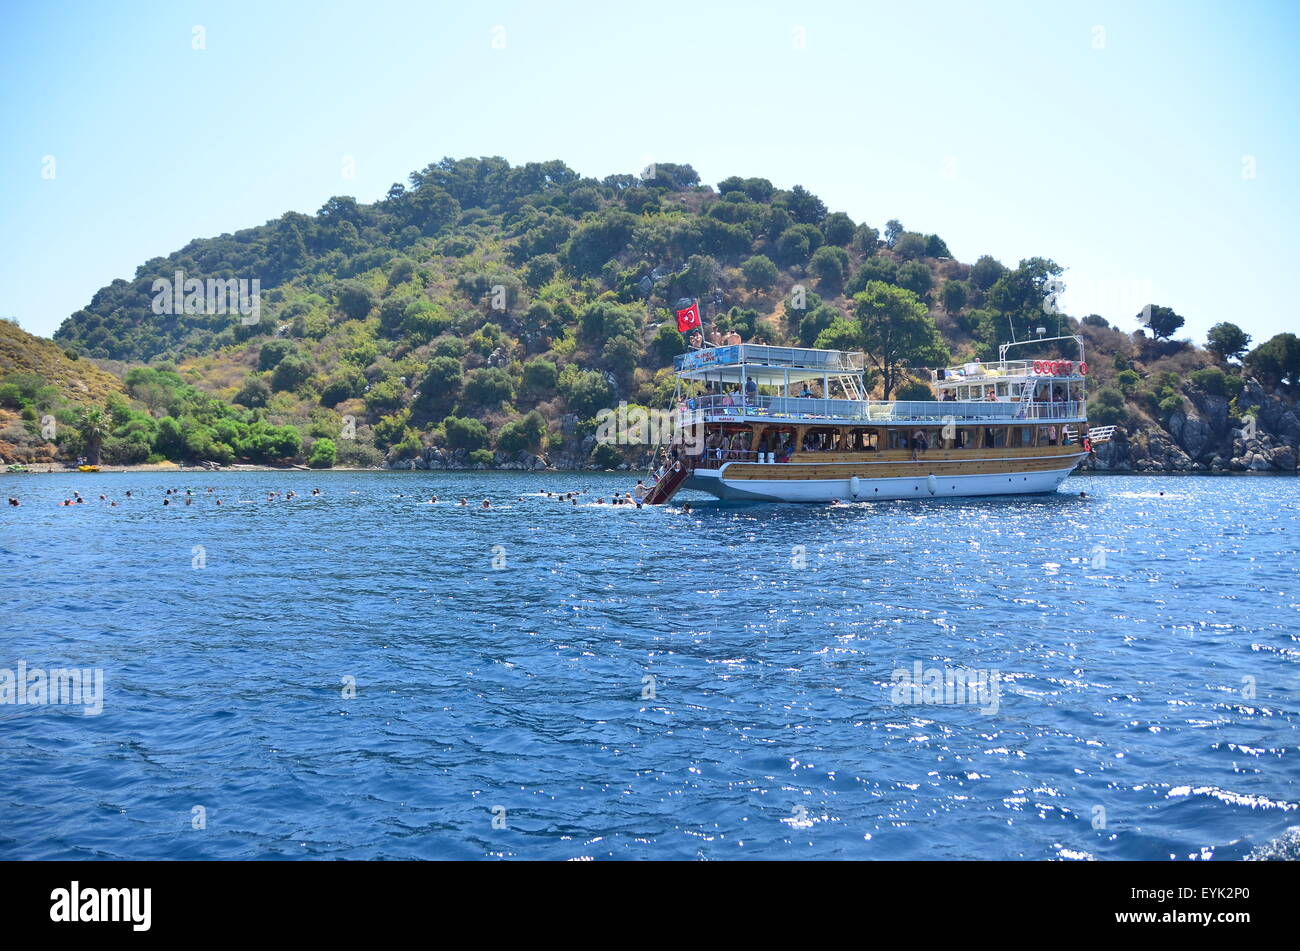 Les touristes en voyage sur Location-bateaux dans la mer au large de Marmaris, Turquie Banque D'Images